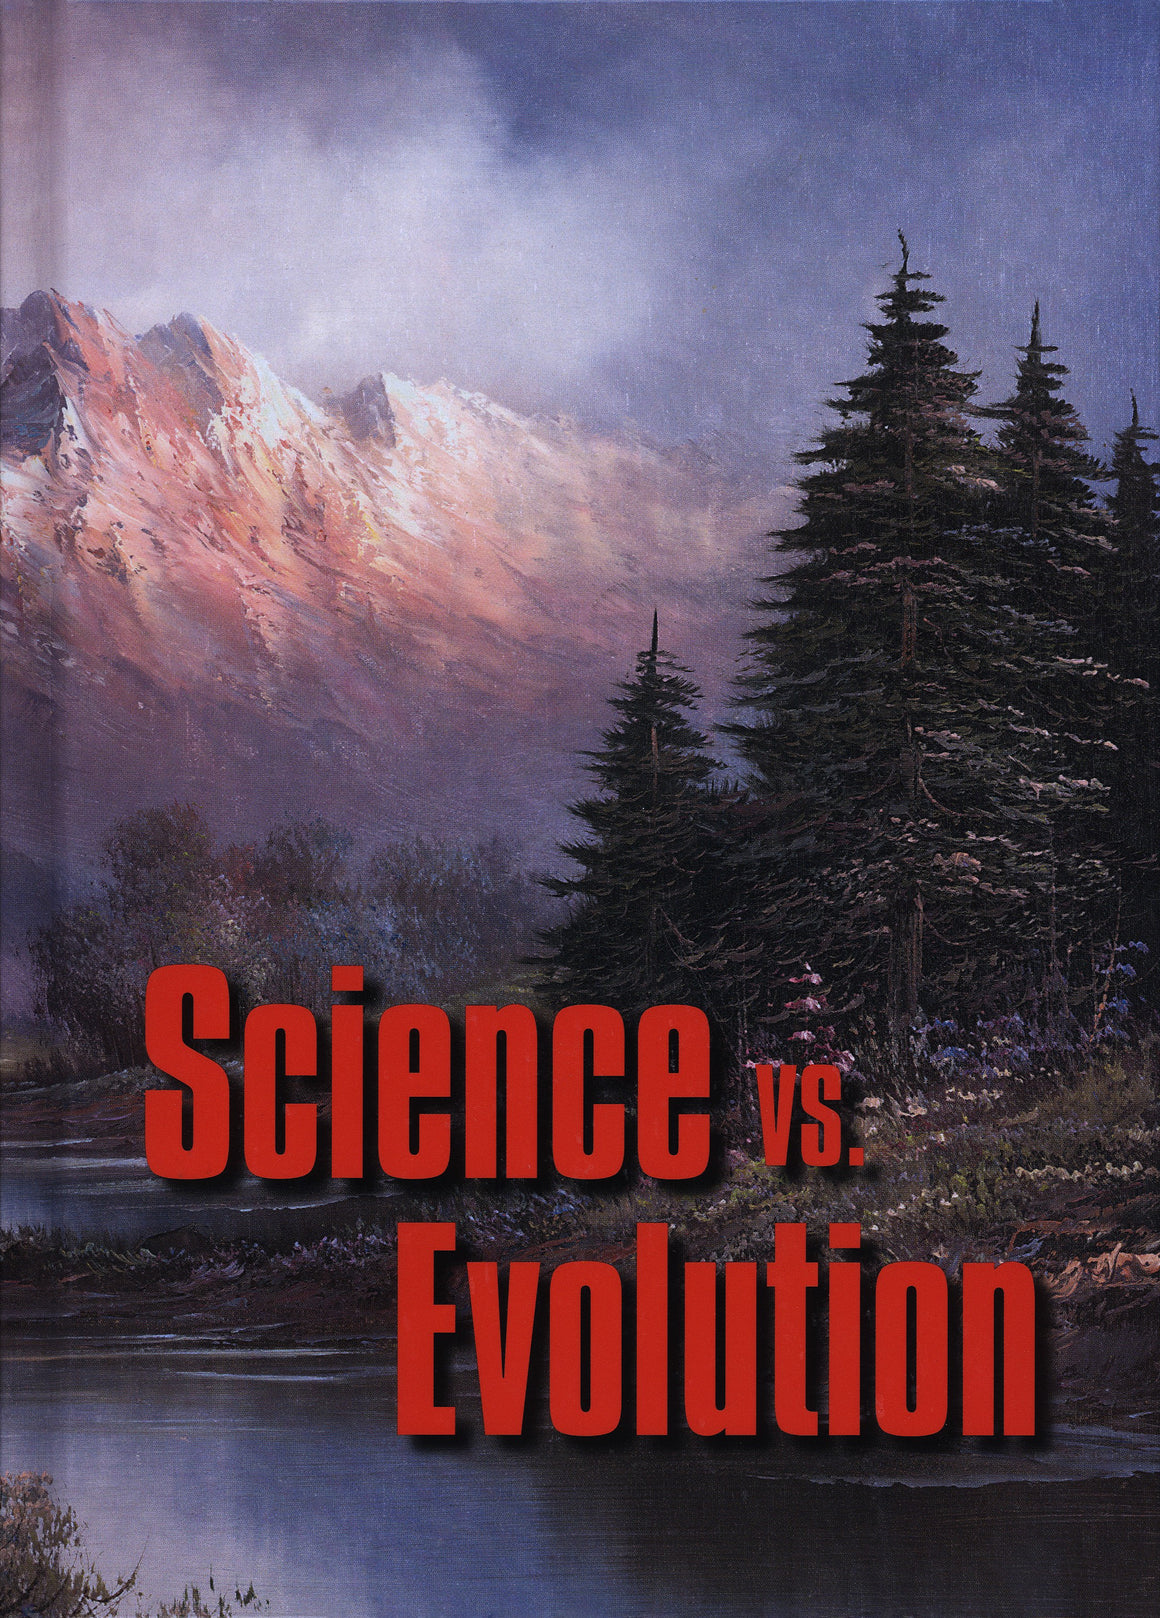 Science vs. Evolution